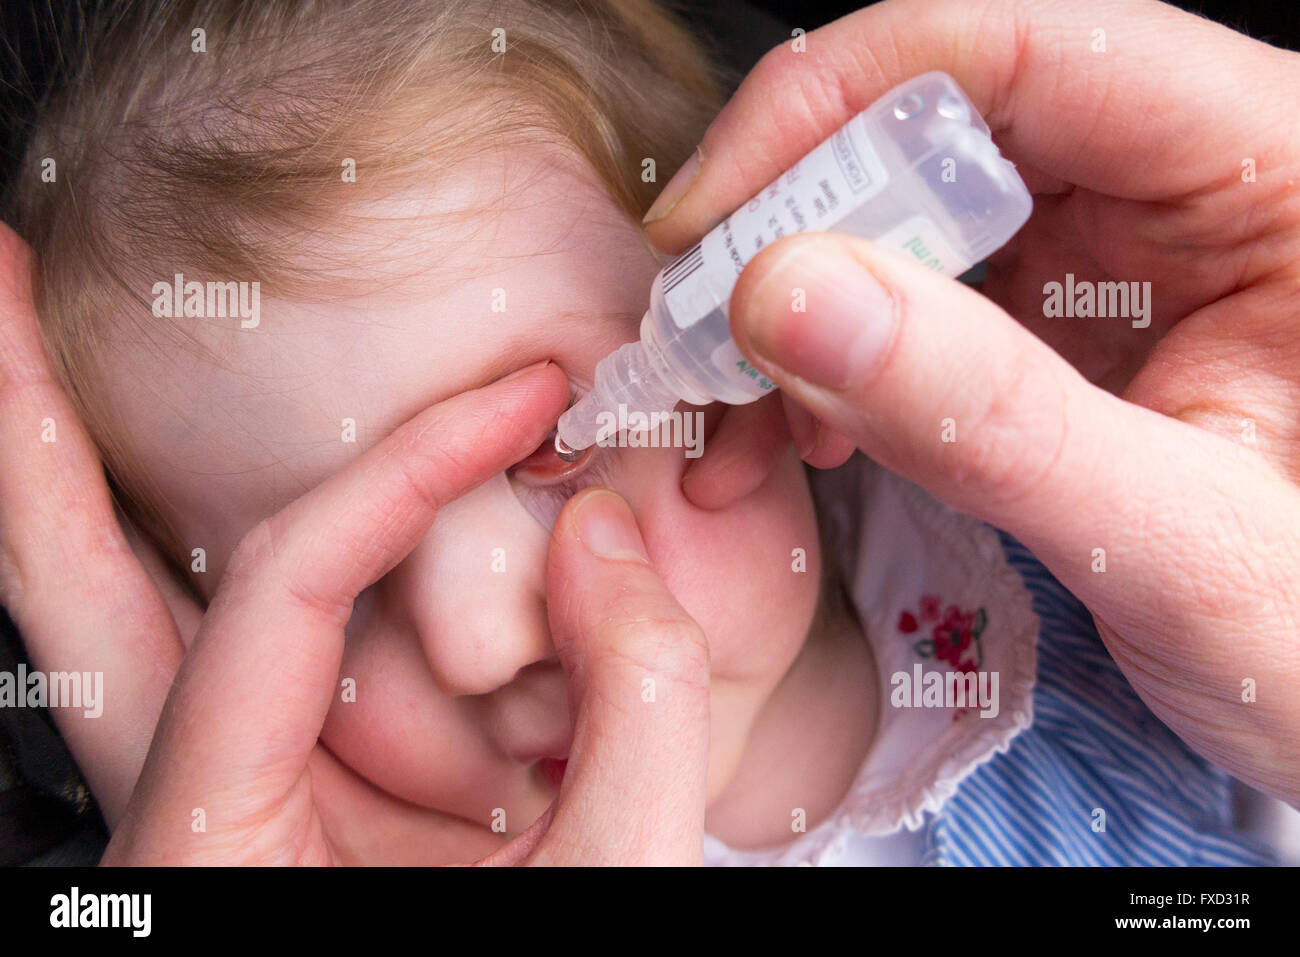 20 Monate altes Kind / Kind Kleinkind Baby mit Bindehautentzündung antibiotische Augentropfen Tropfen von ihrer Mutter gegeben werden / Mutter Stockfoto